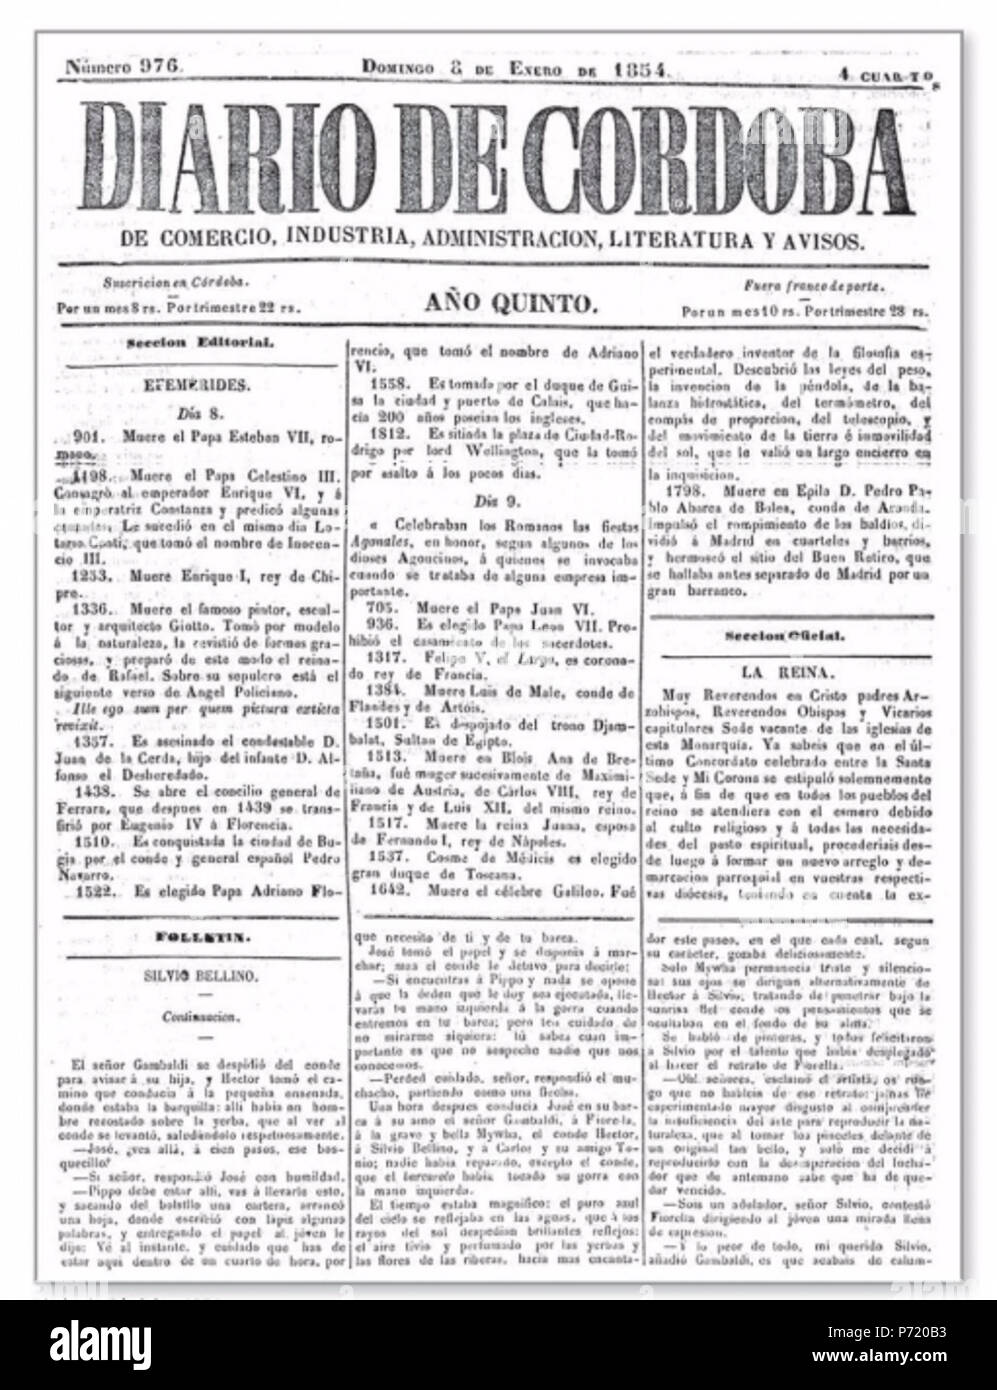 26 Diario de Córdoba, 8 de enero de 1854 Stock Photo